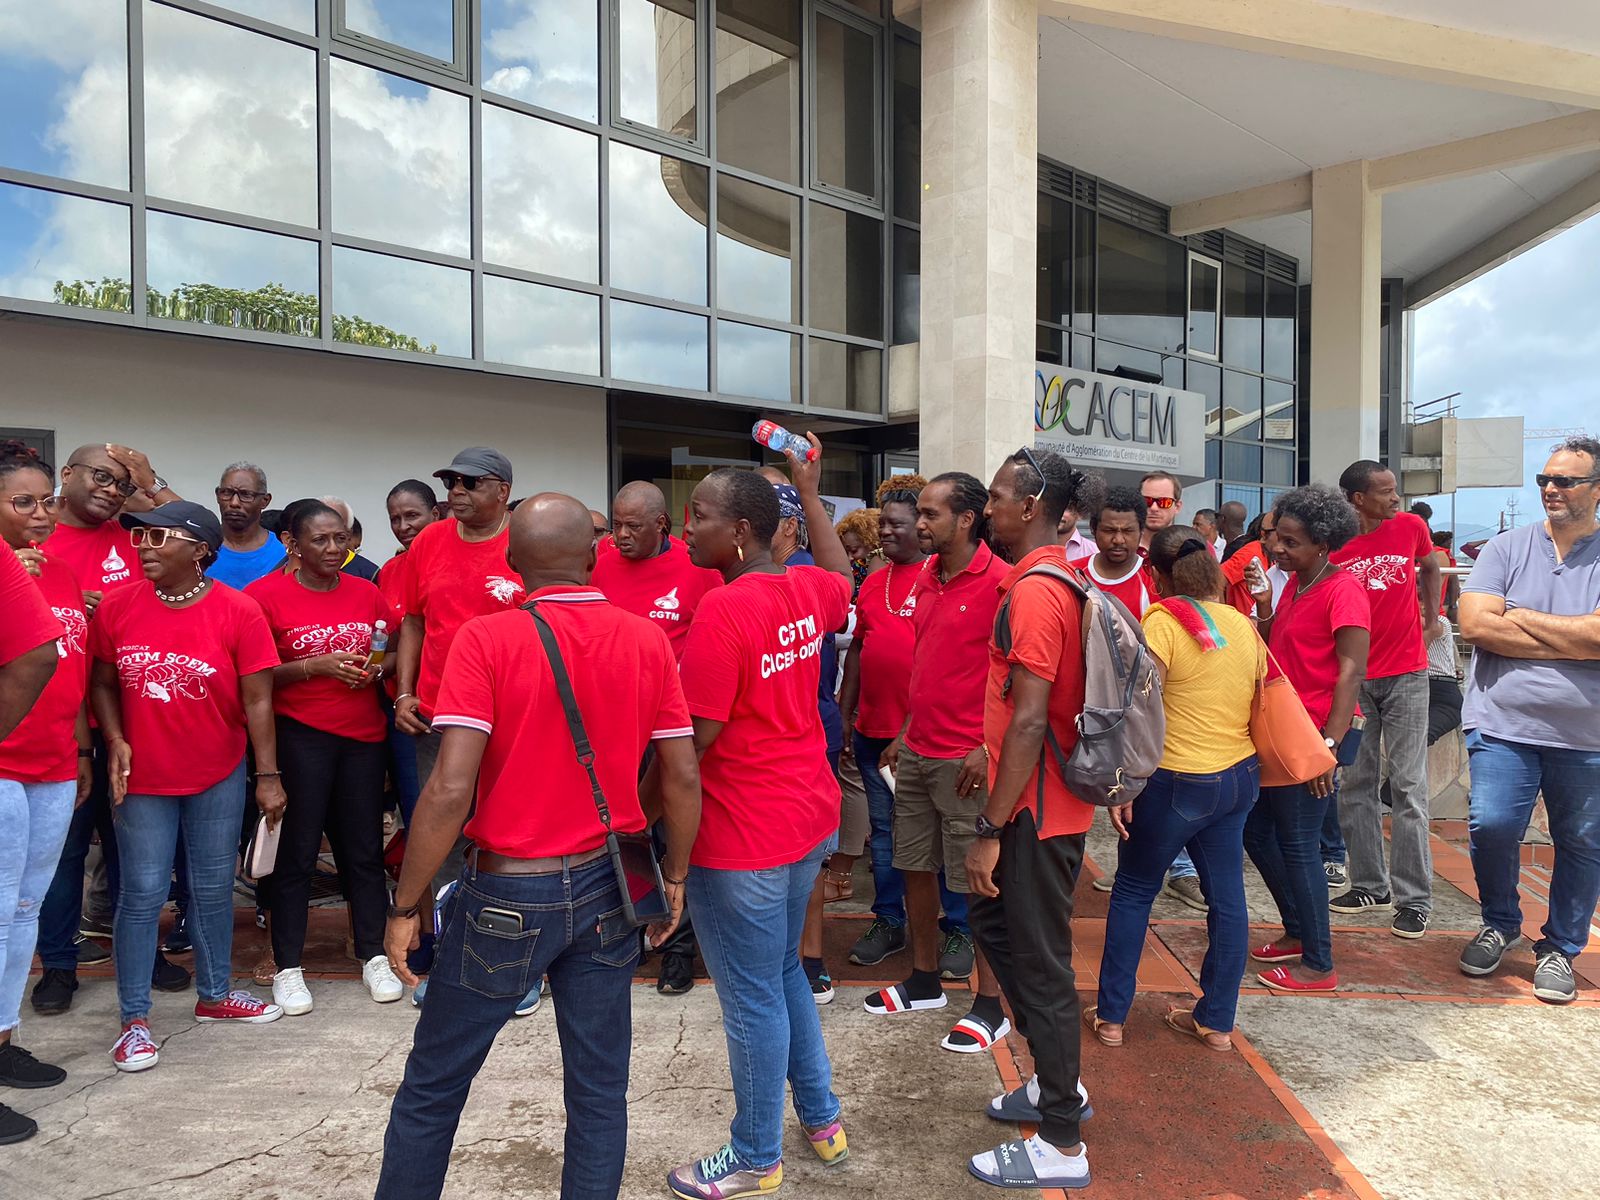     Grève : des agents de la CACEM mobilisés devant les locaux

